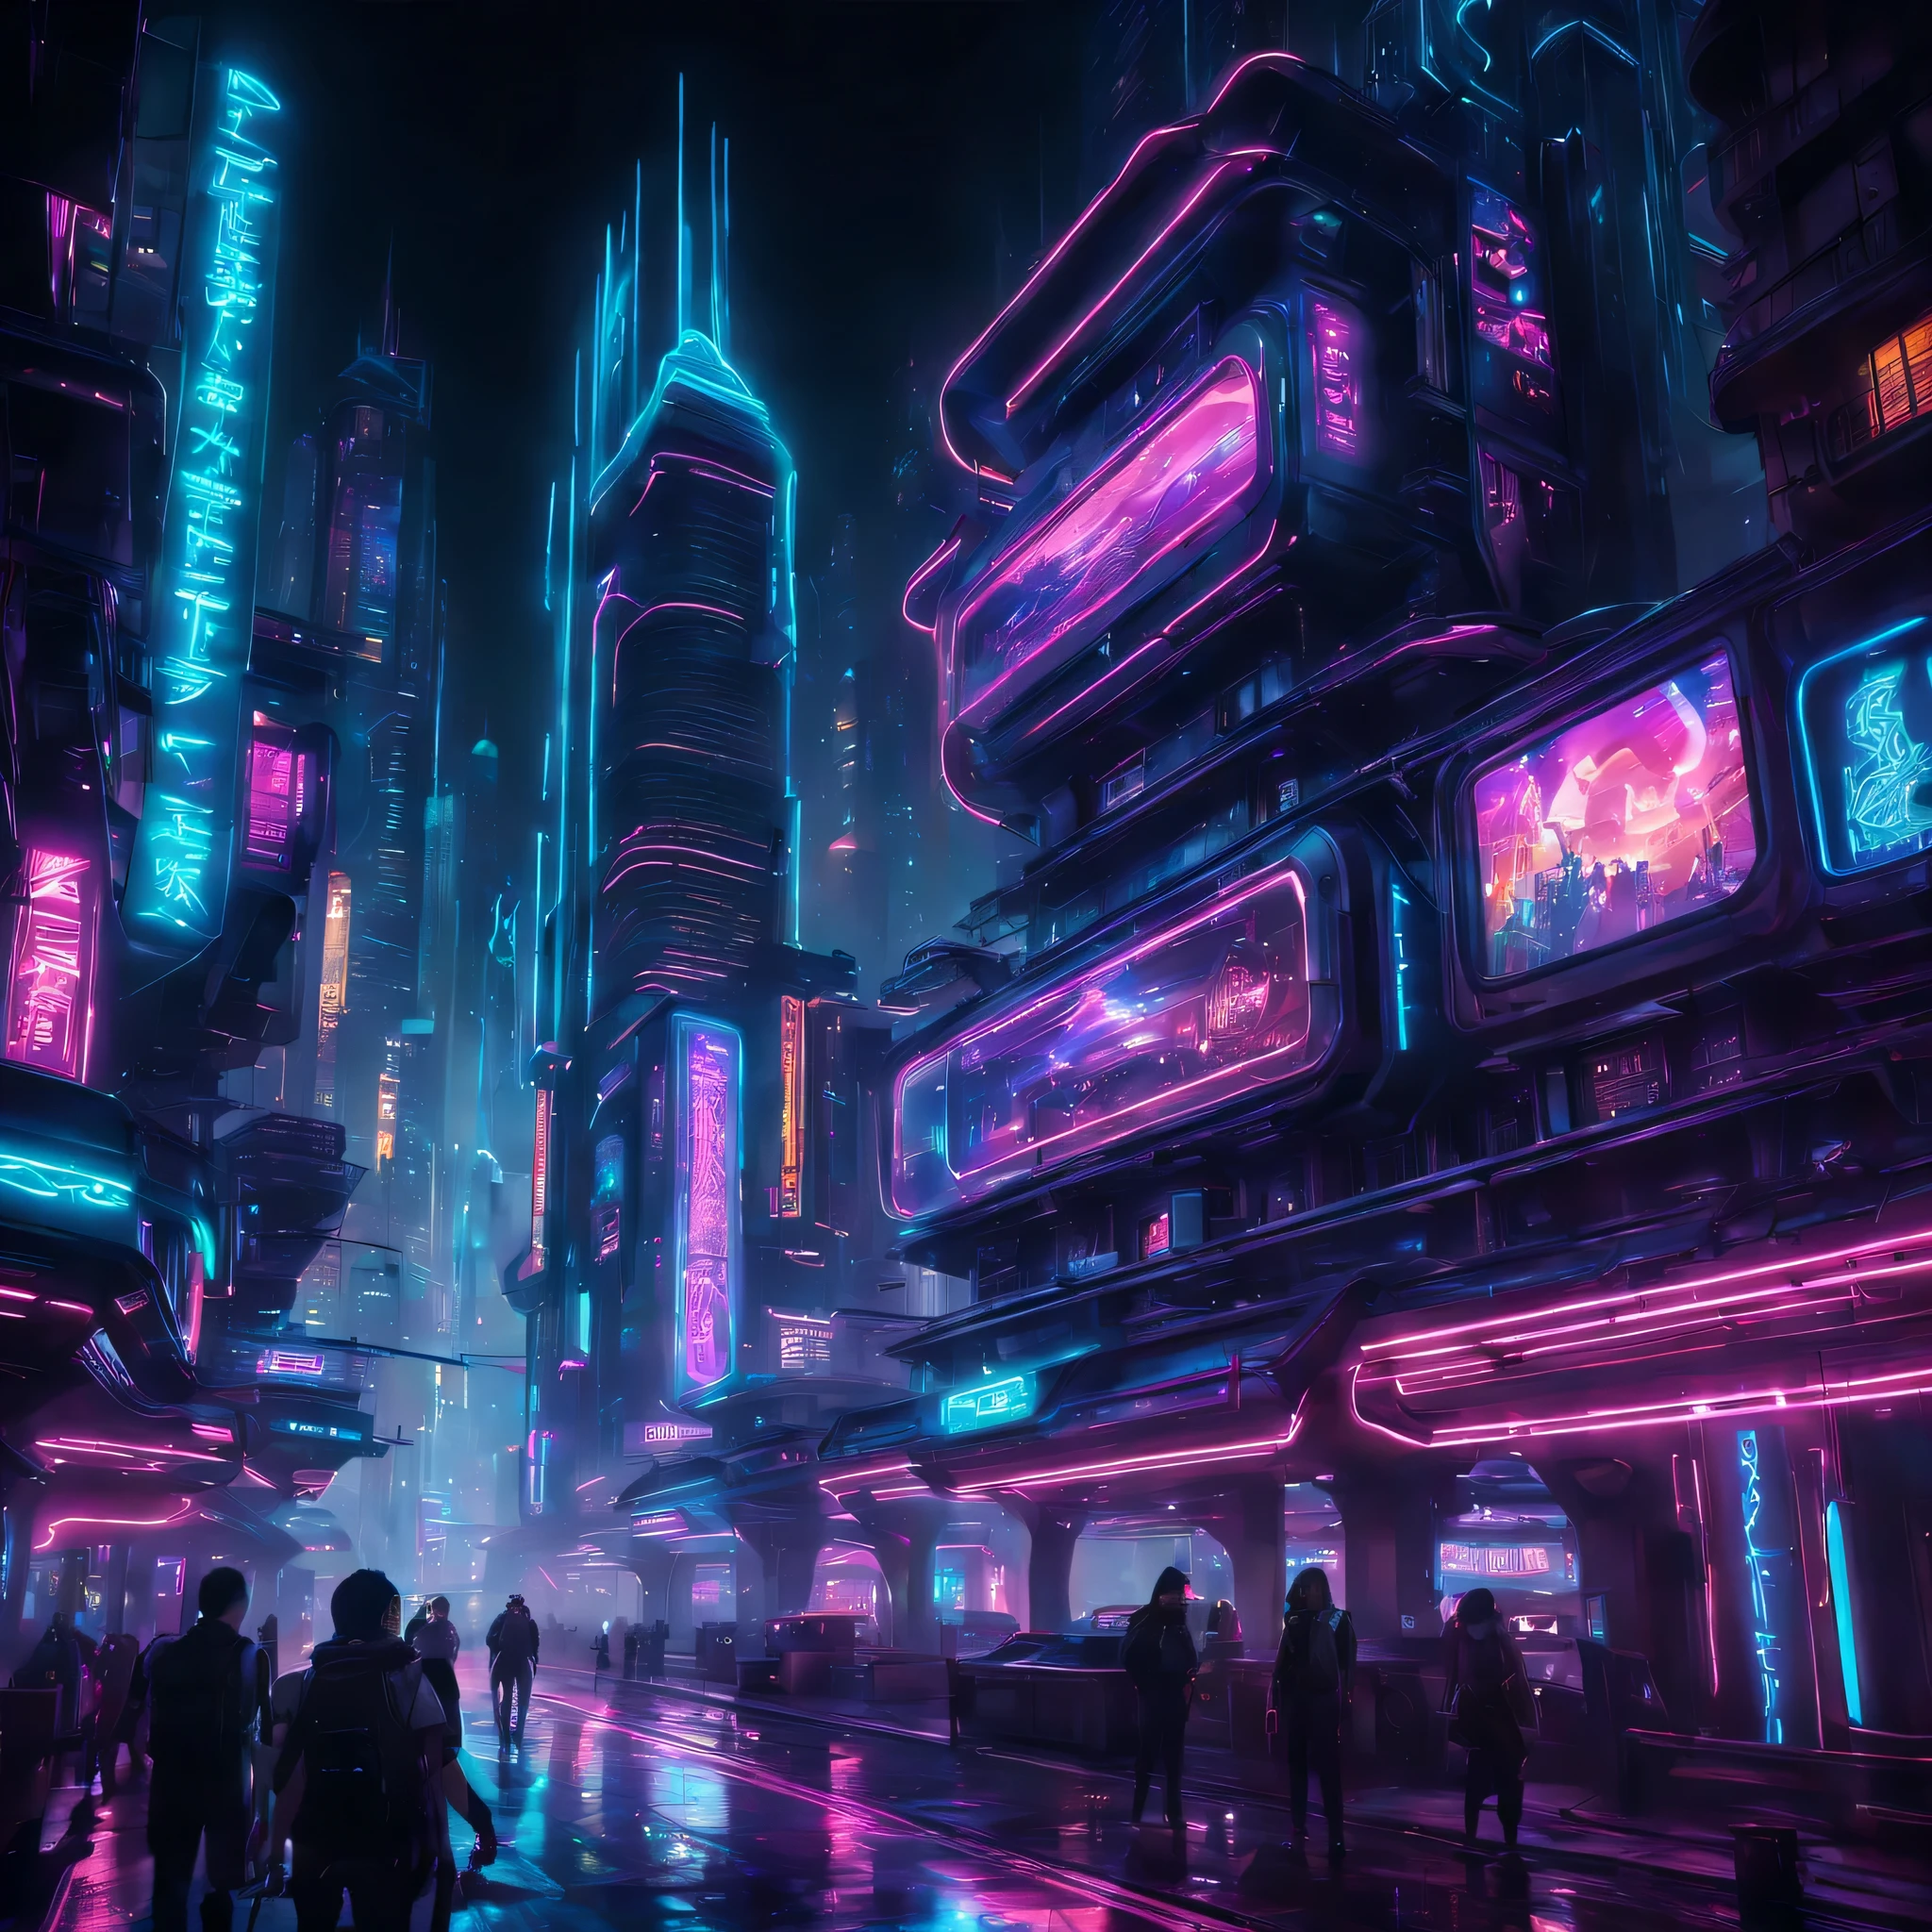 arte por mooncryptowow, Nas ruas iluminadas por neon de uma cidade noturna cyberpunk, uma exibição hipnotizante de arquitetura futurista e luzes deslumbrantes cria uma atmosfera eletrizante e envolvente. A estrutura dinâmica é evidente à medida que a paisagem urbana interage com os vibrantes elementos cyberpunk, resultando em uma cena visualmente cativante e evocativa que incorpora o ... essência de um ambiente tecnologicamente avançado e visualmente deslumbrante.